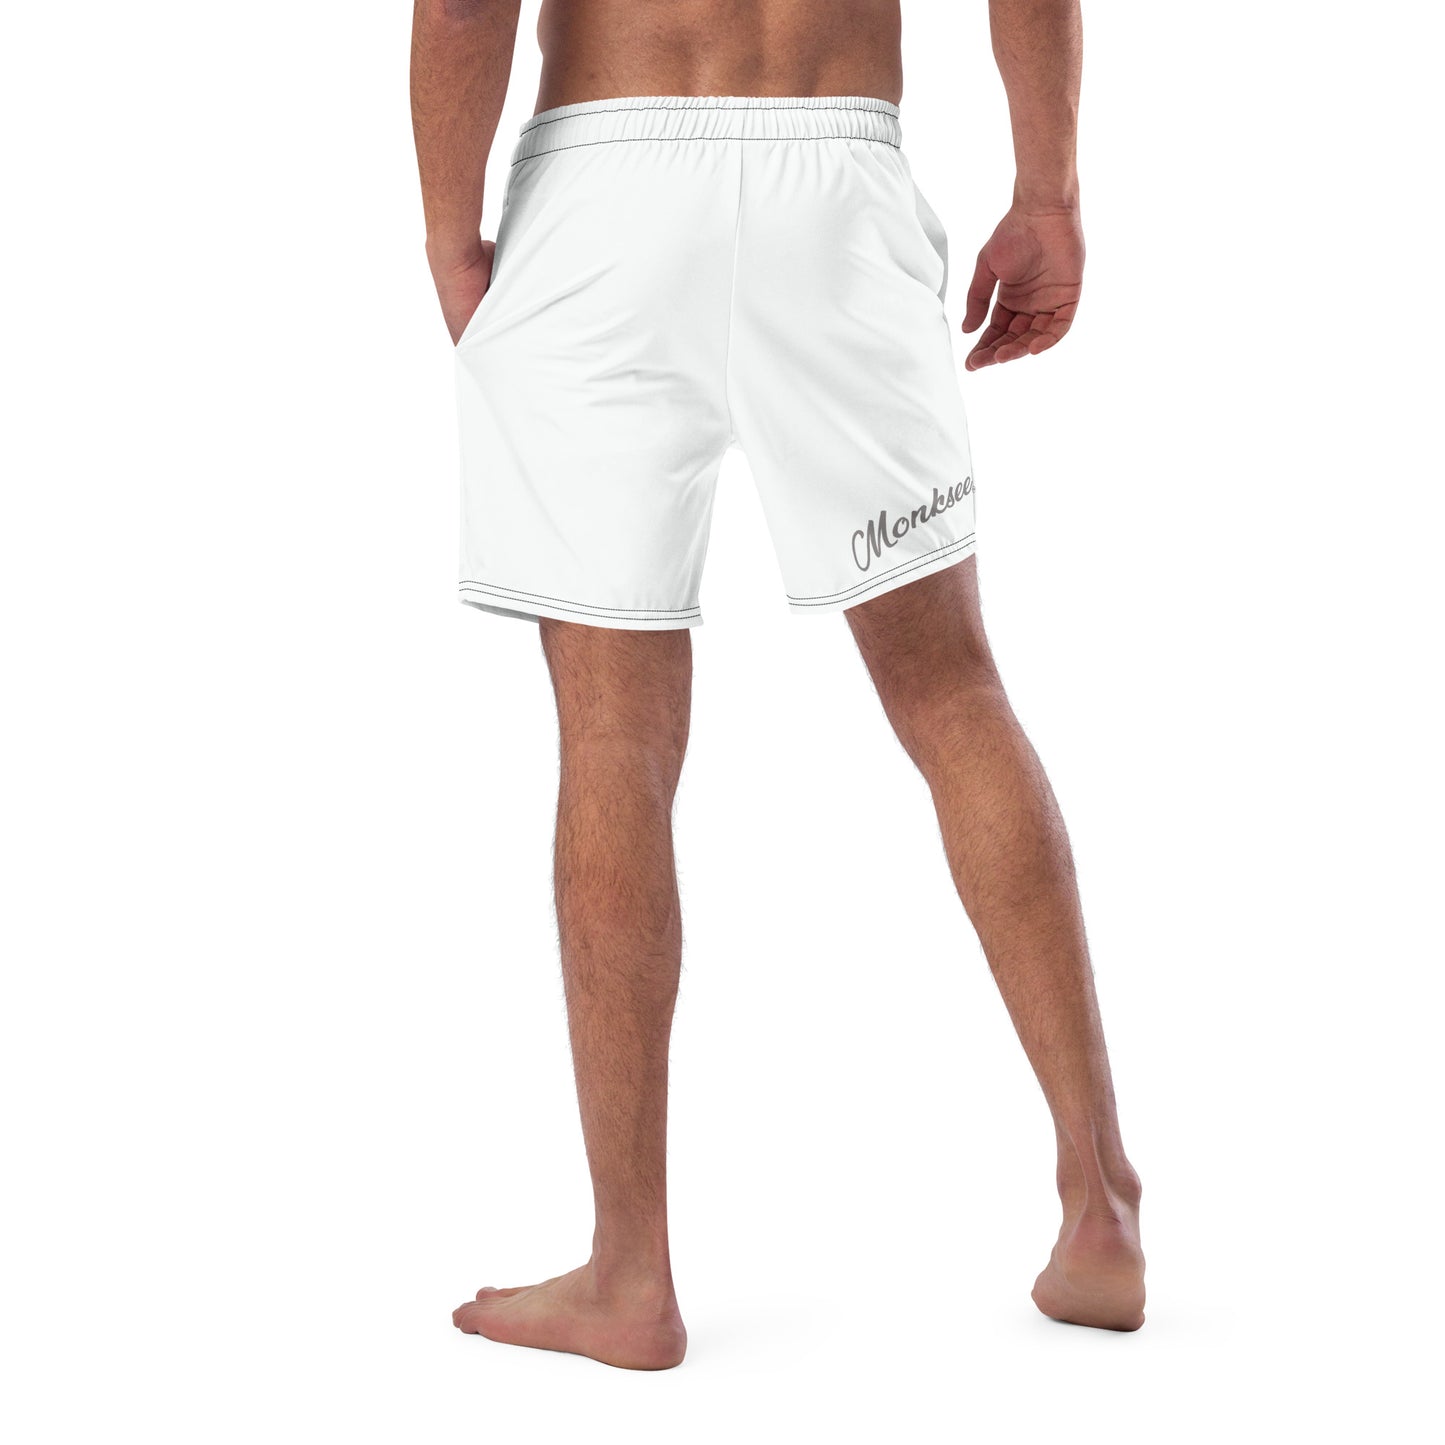 Monksee Face - Mens Board shorts.